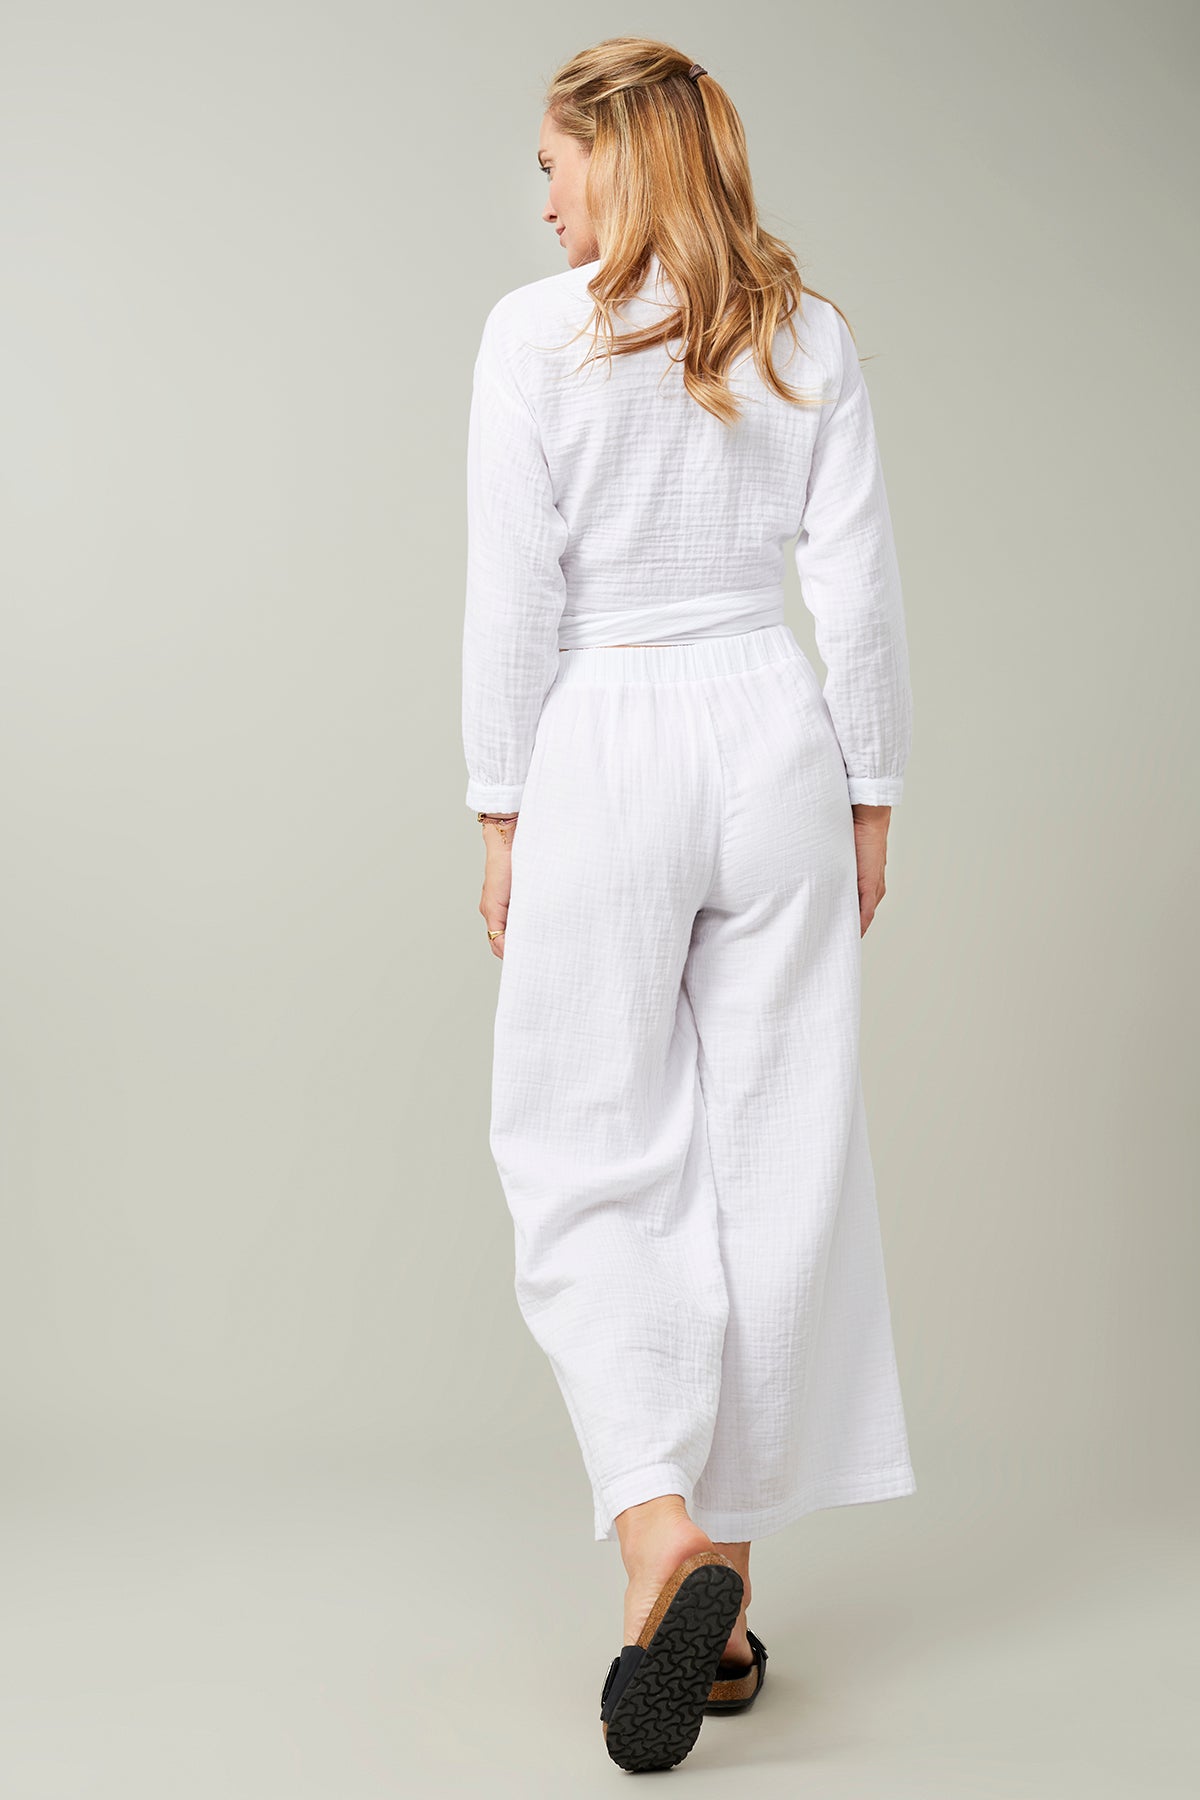 Mandala Yoga Pant Weiß Outfit Rückseite - Nomad Pants